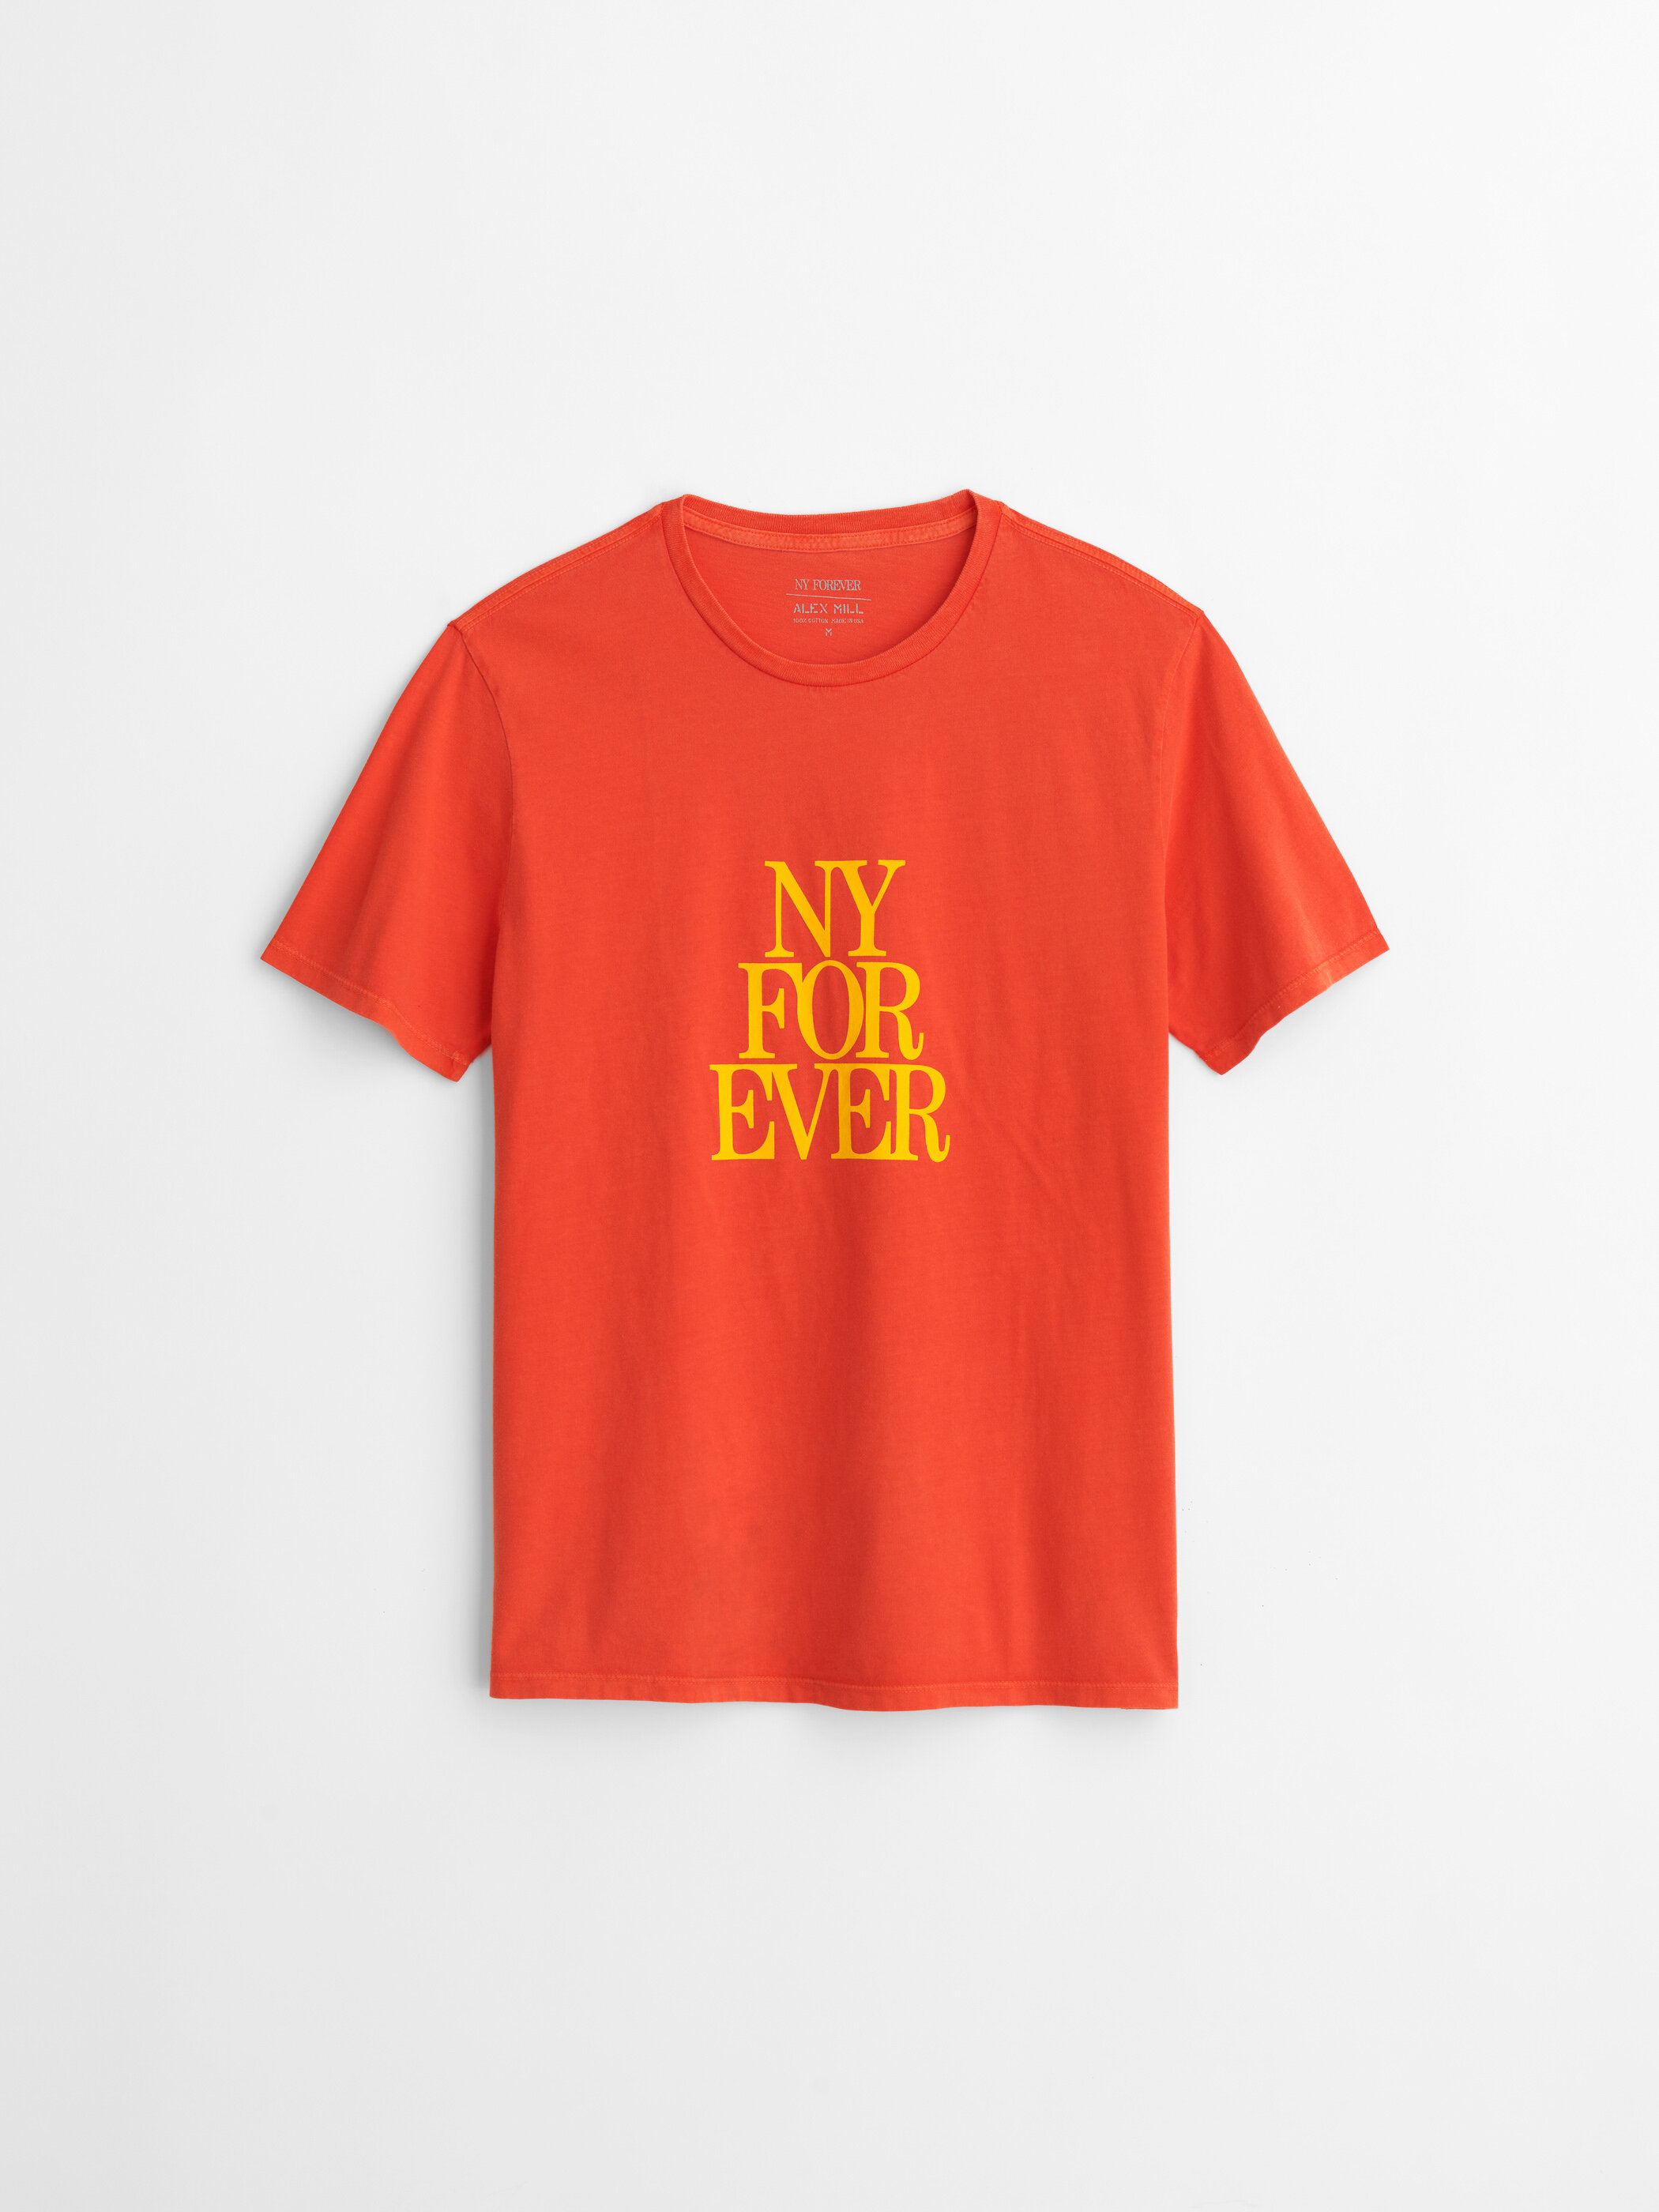 Merchandise — NYForever